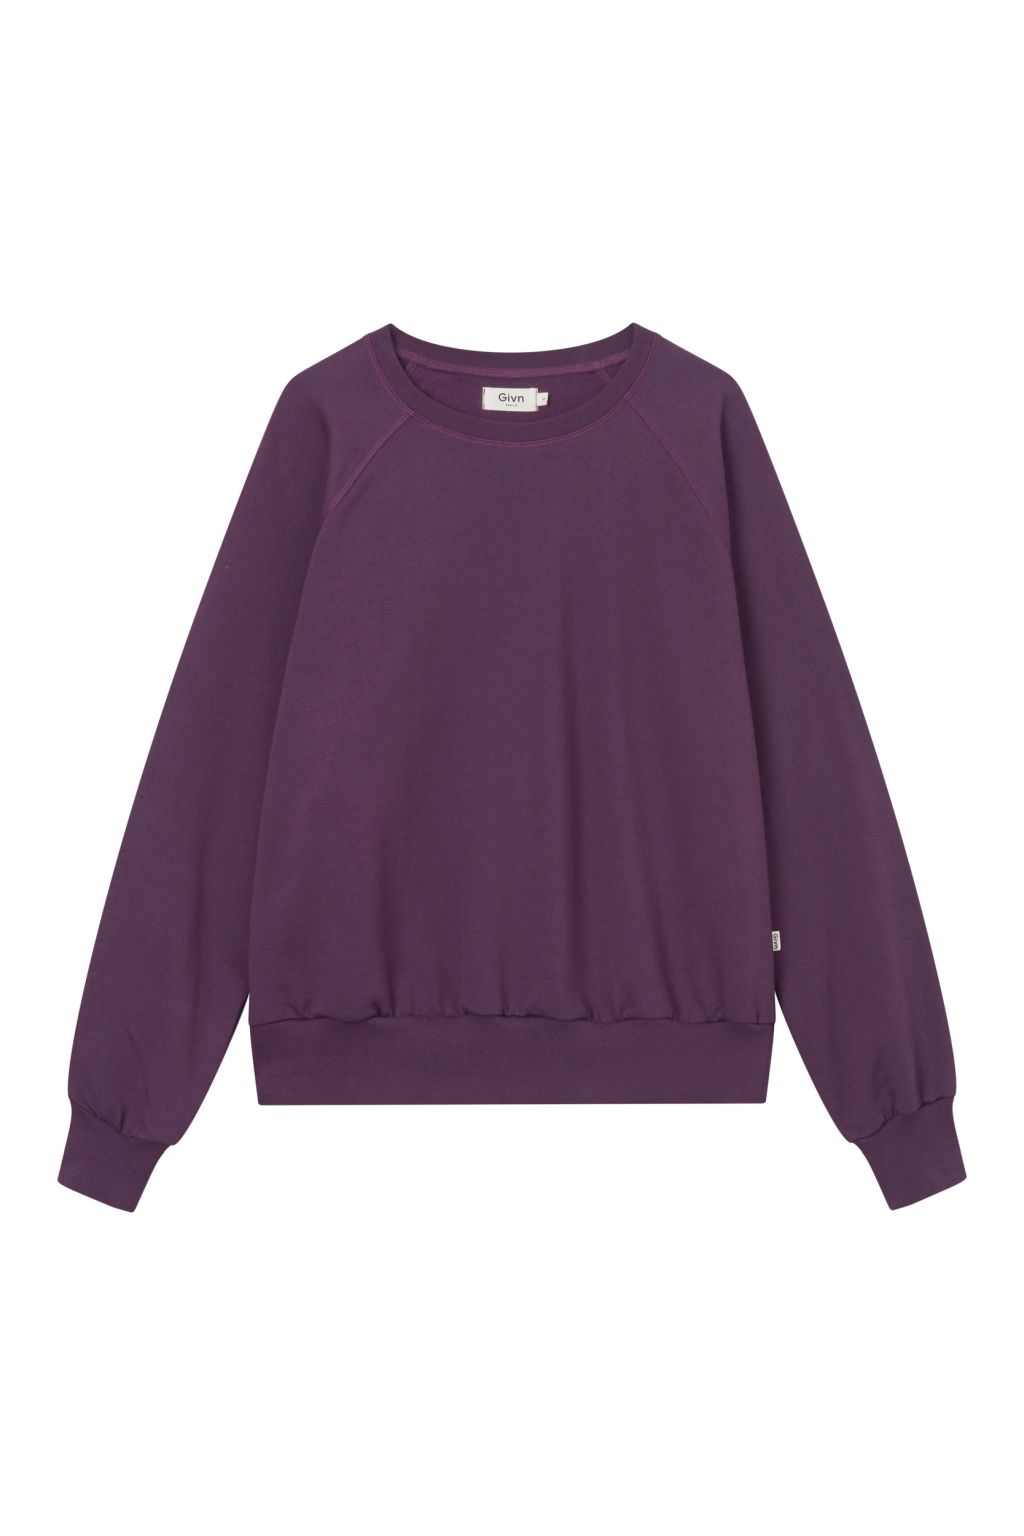 Dede - Sweater - Bio-Baumwolle Dark Purple XS